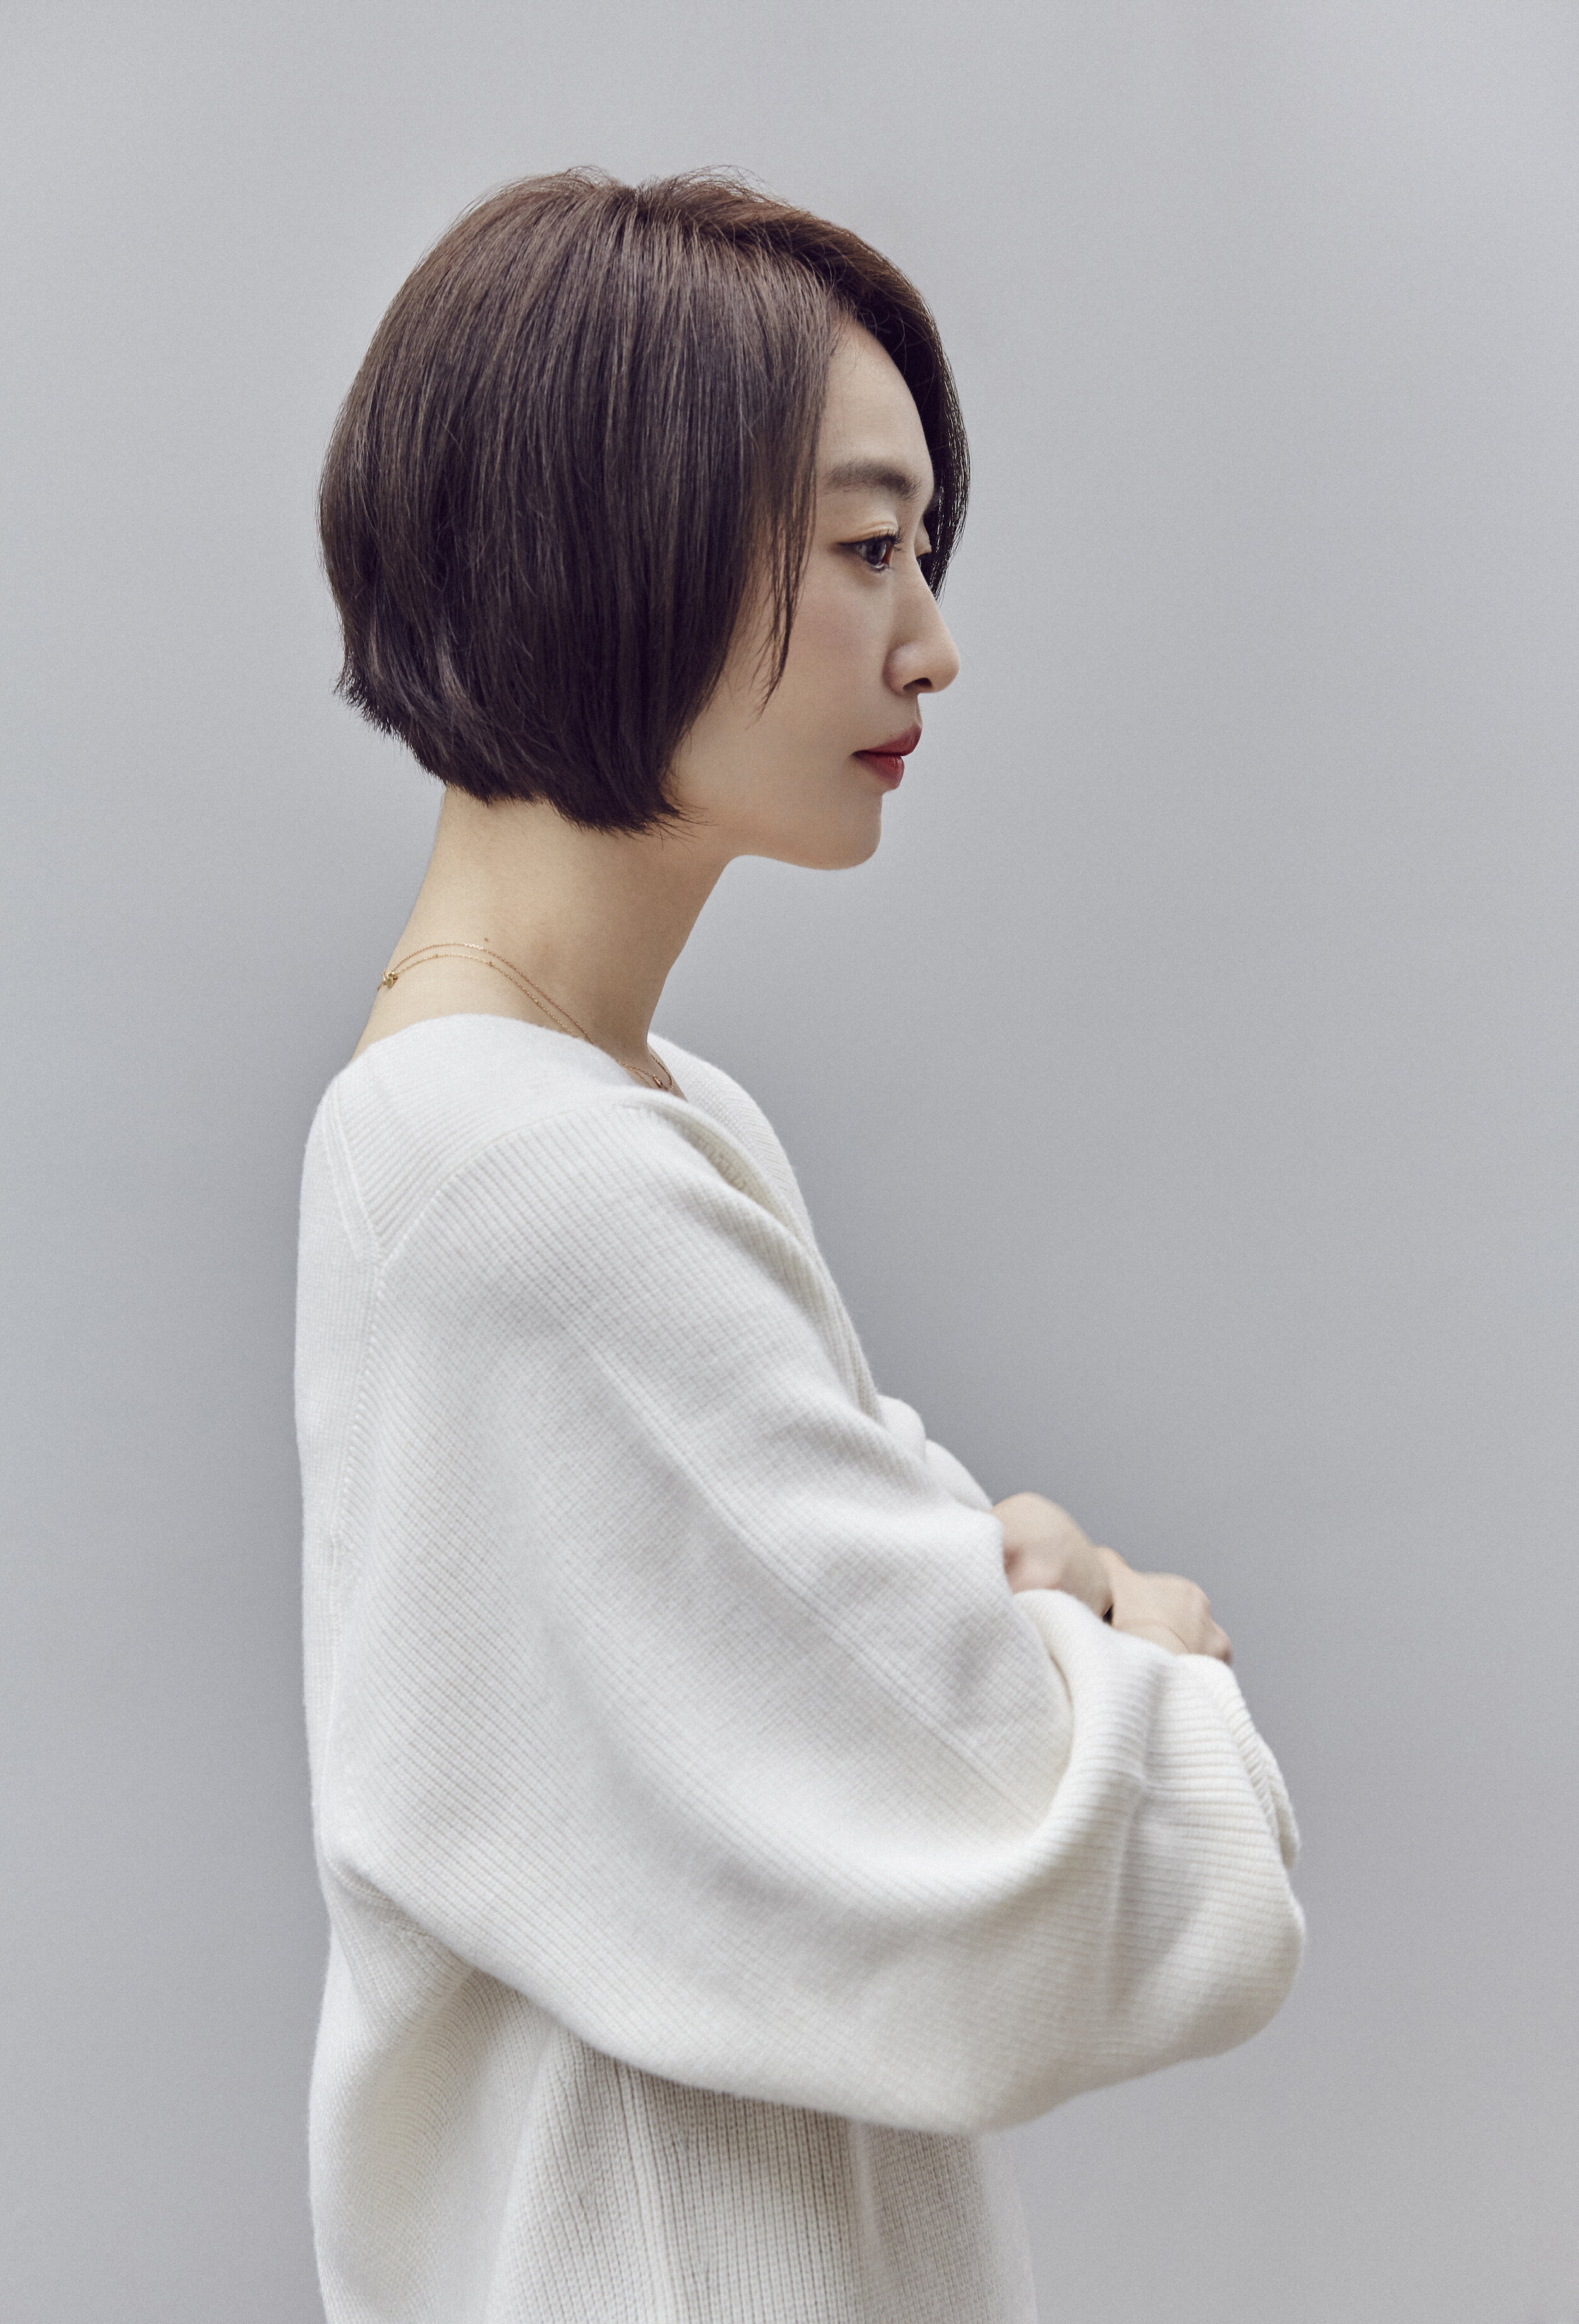 Shinhye Suk 석신혜 Founder and fashion designer at LEHHO